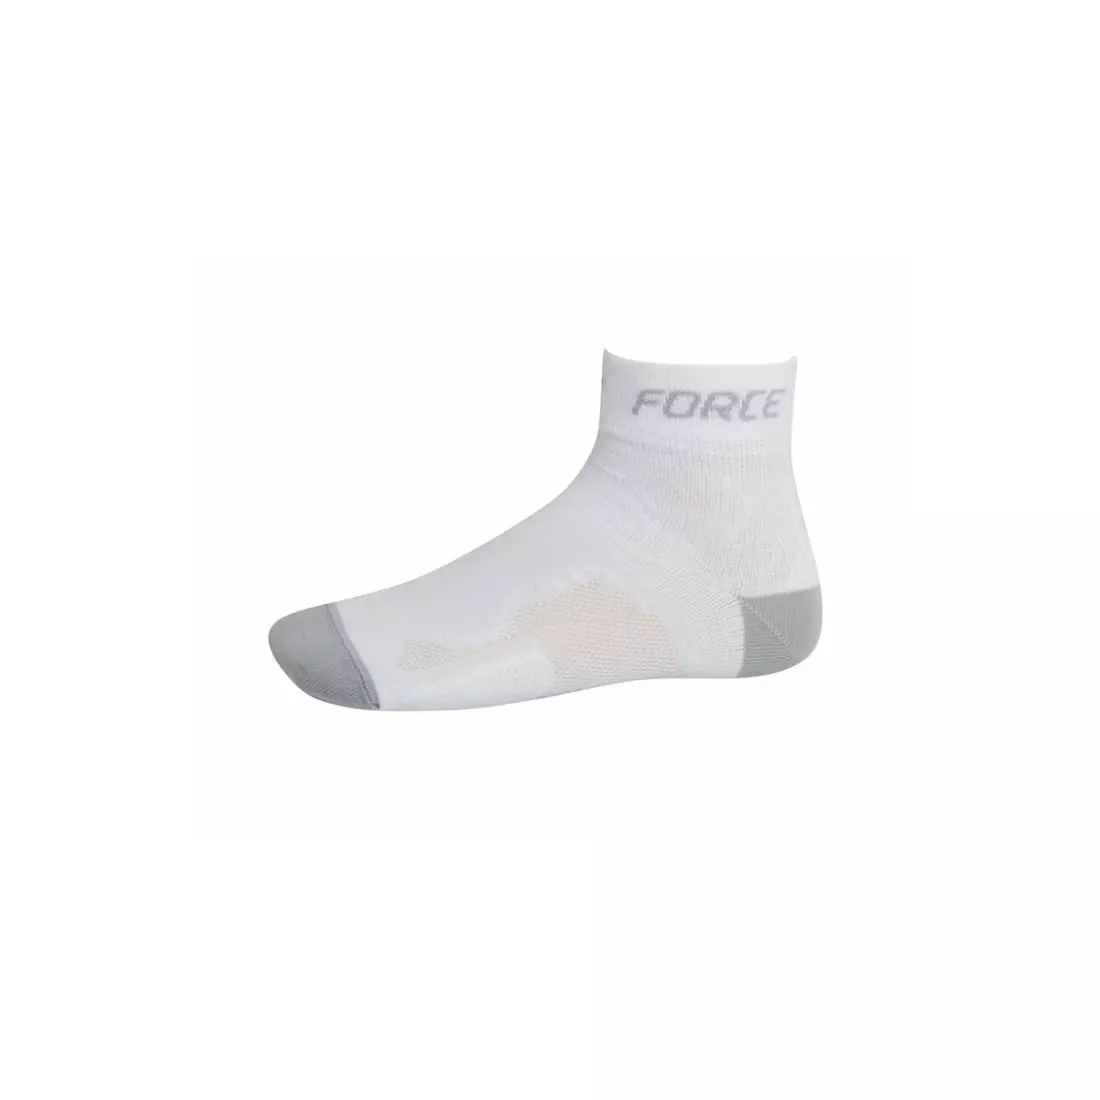 Sportovní ponožky FORCE 2 COOLMAX 901029 - bílé a šedé